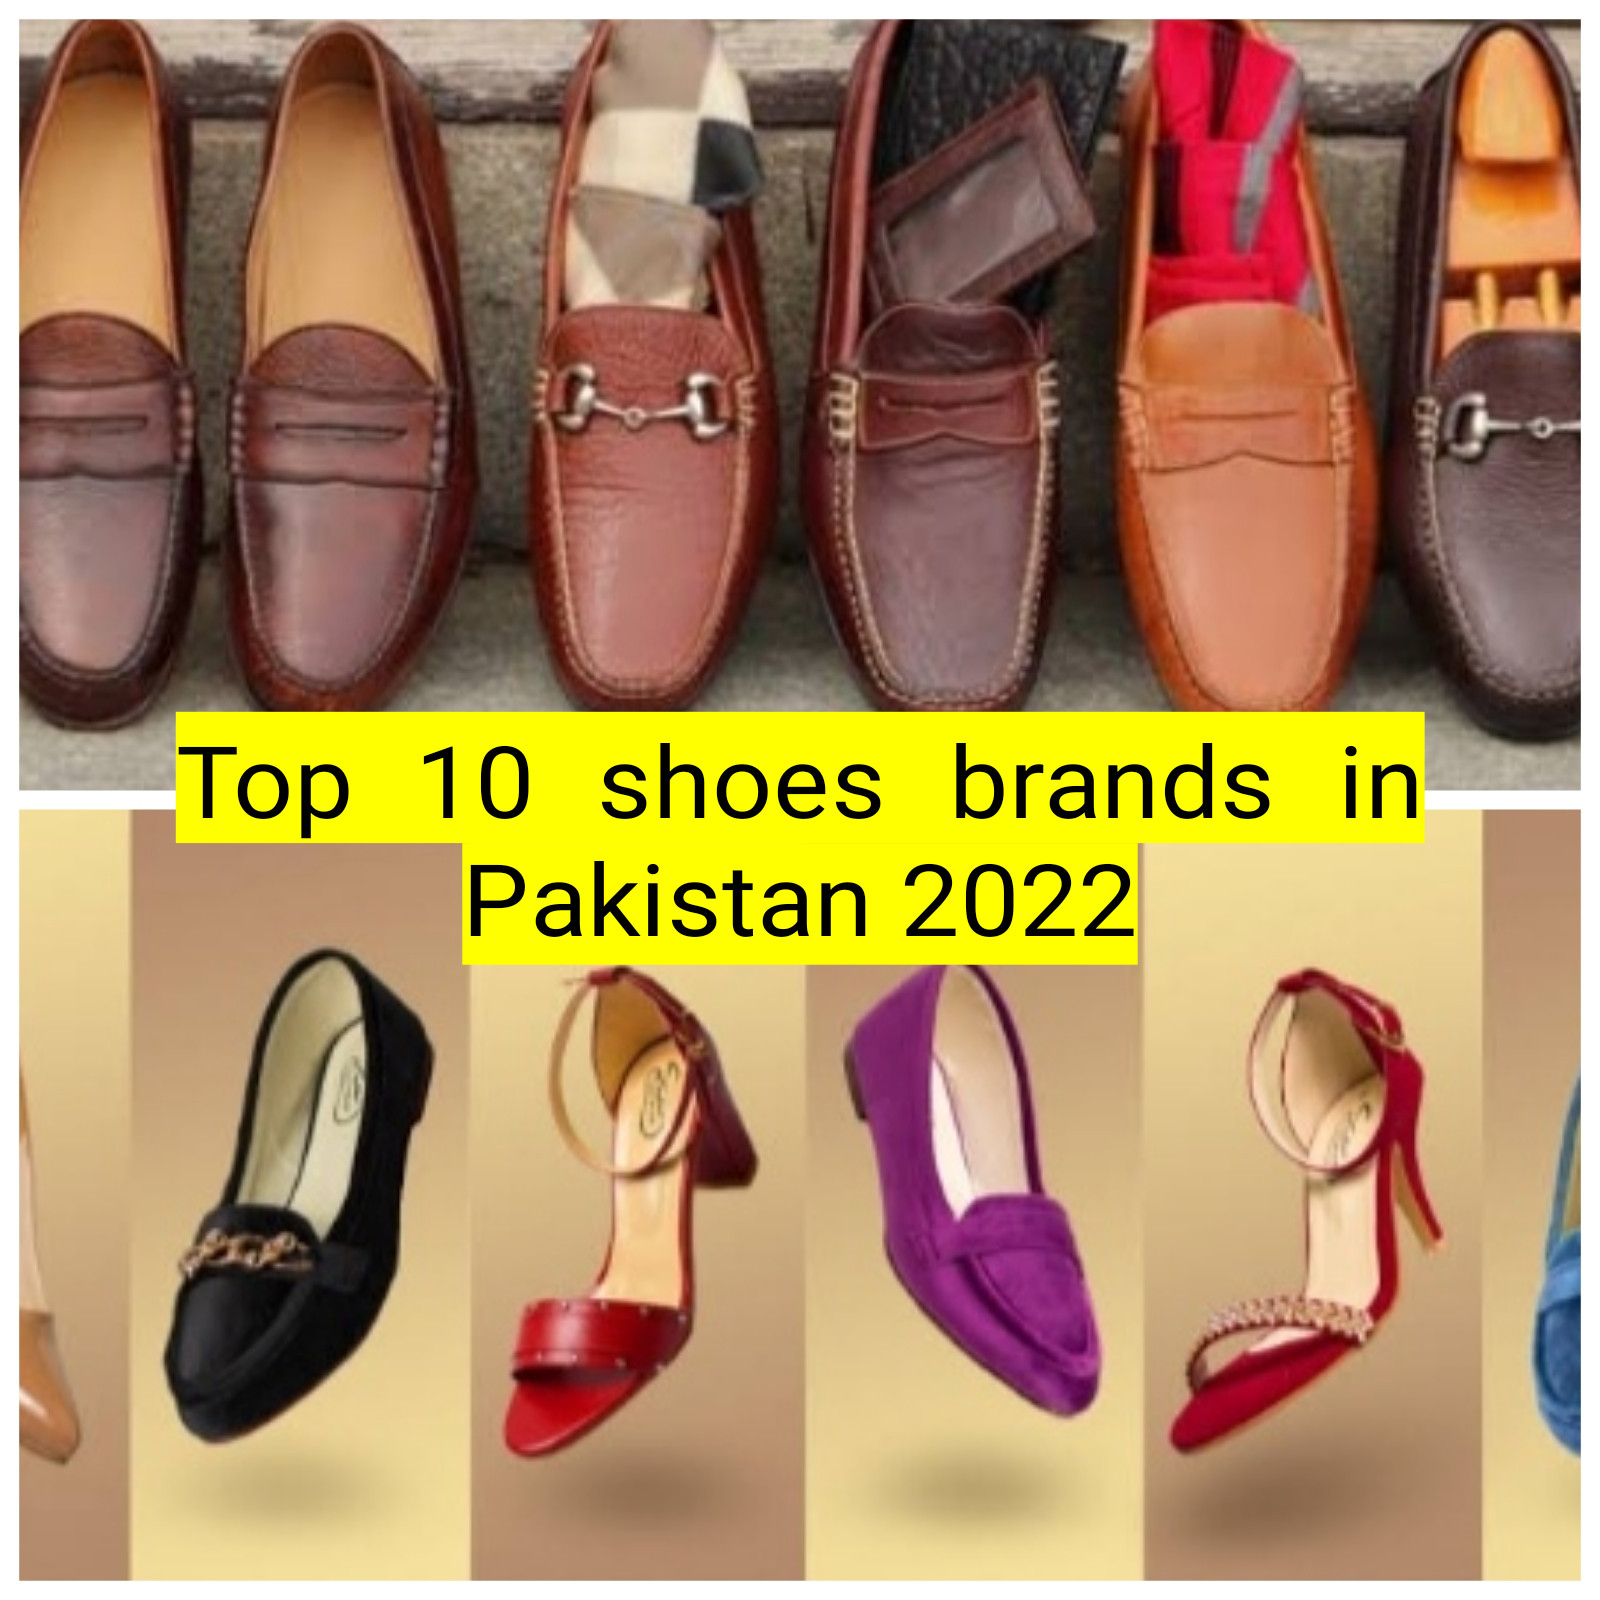 Top 10 Shoes brands in Pakistan